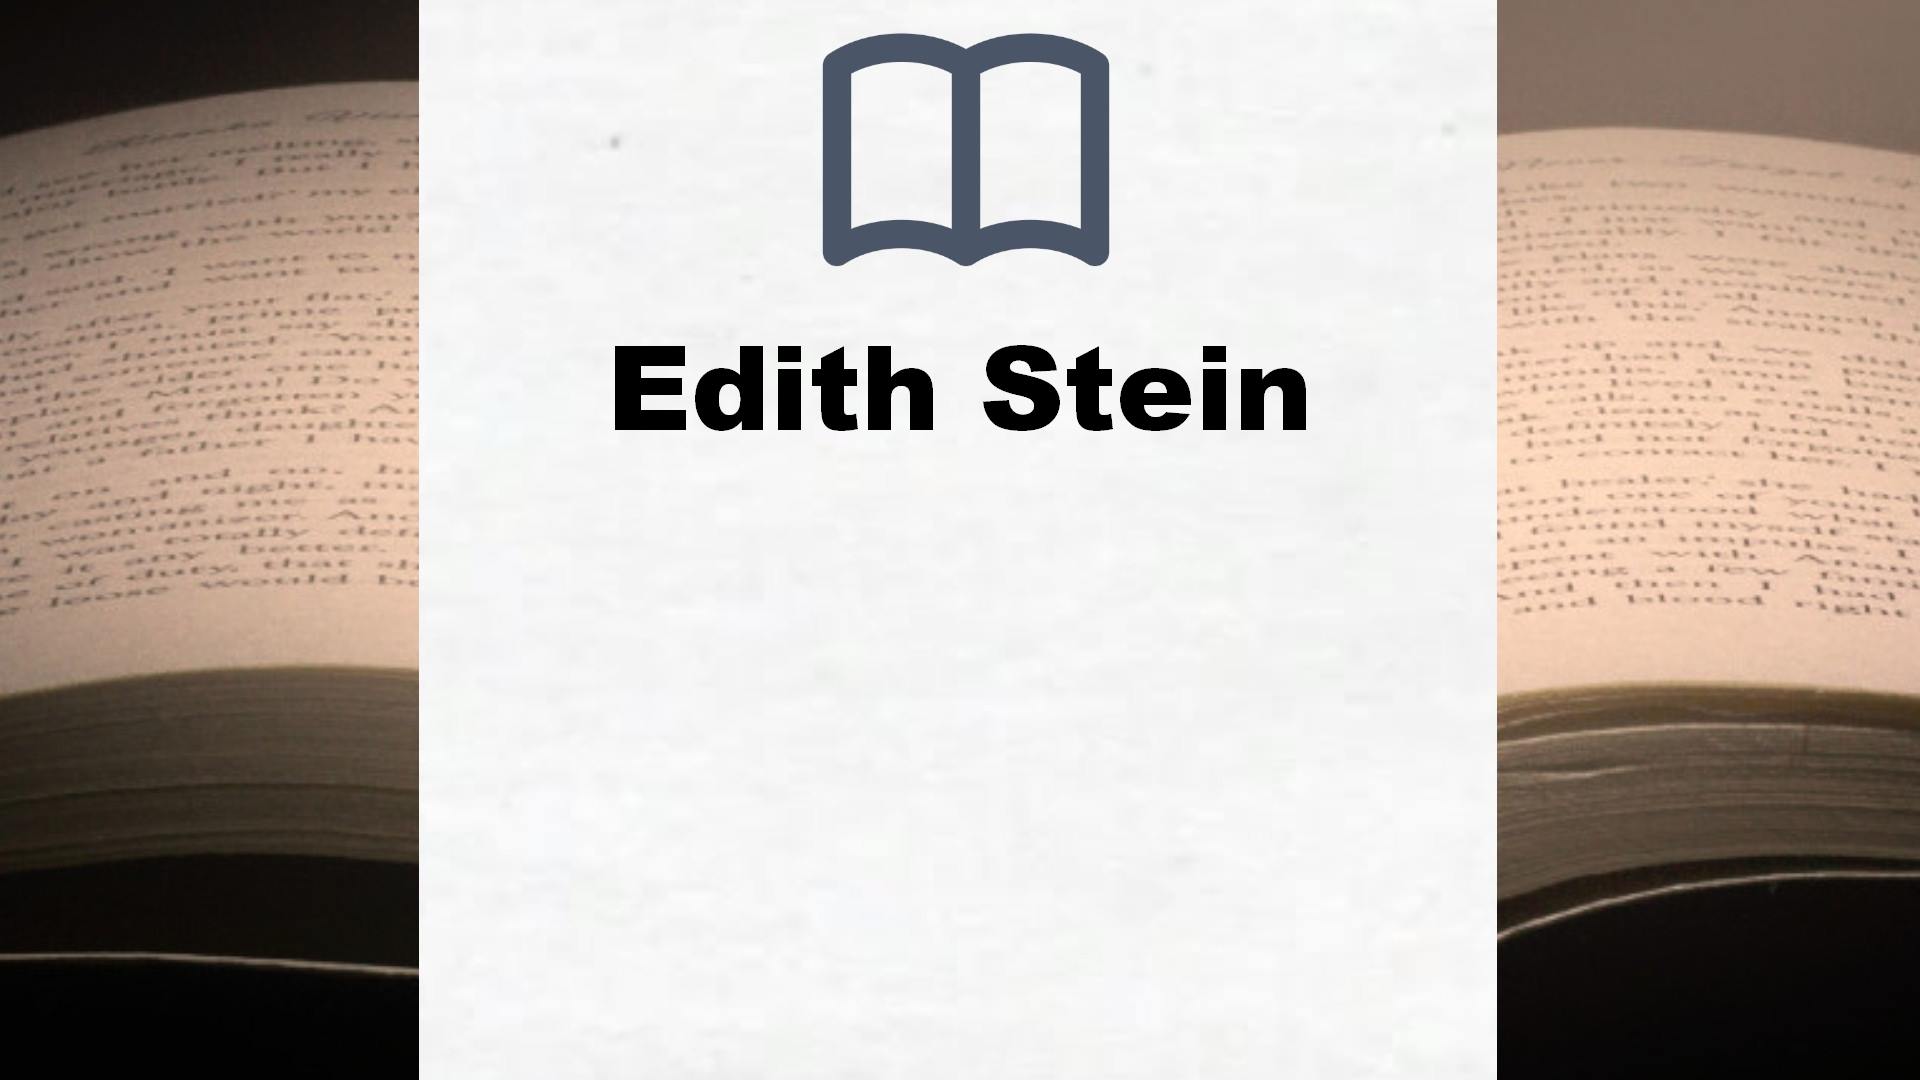 Bücher über Edith Stein